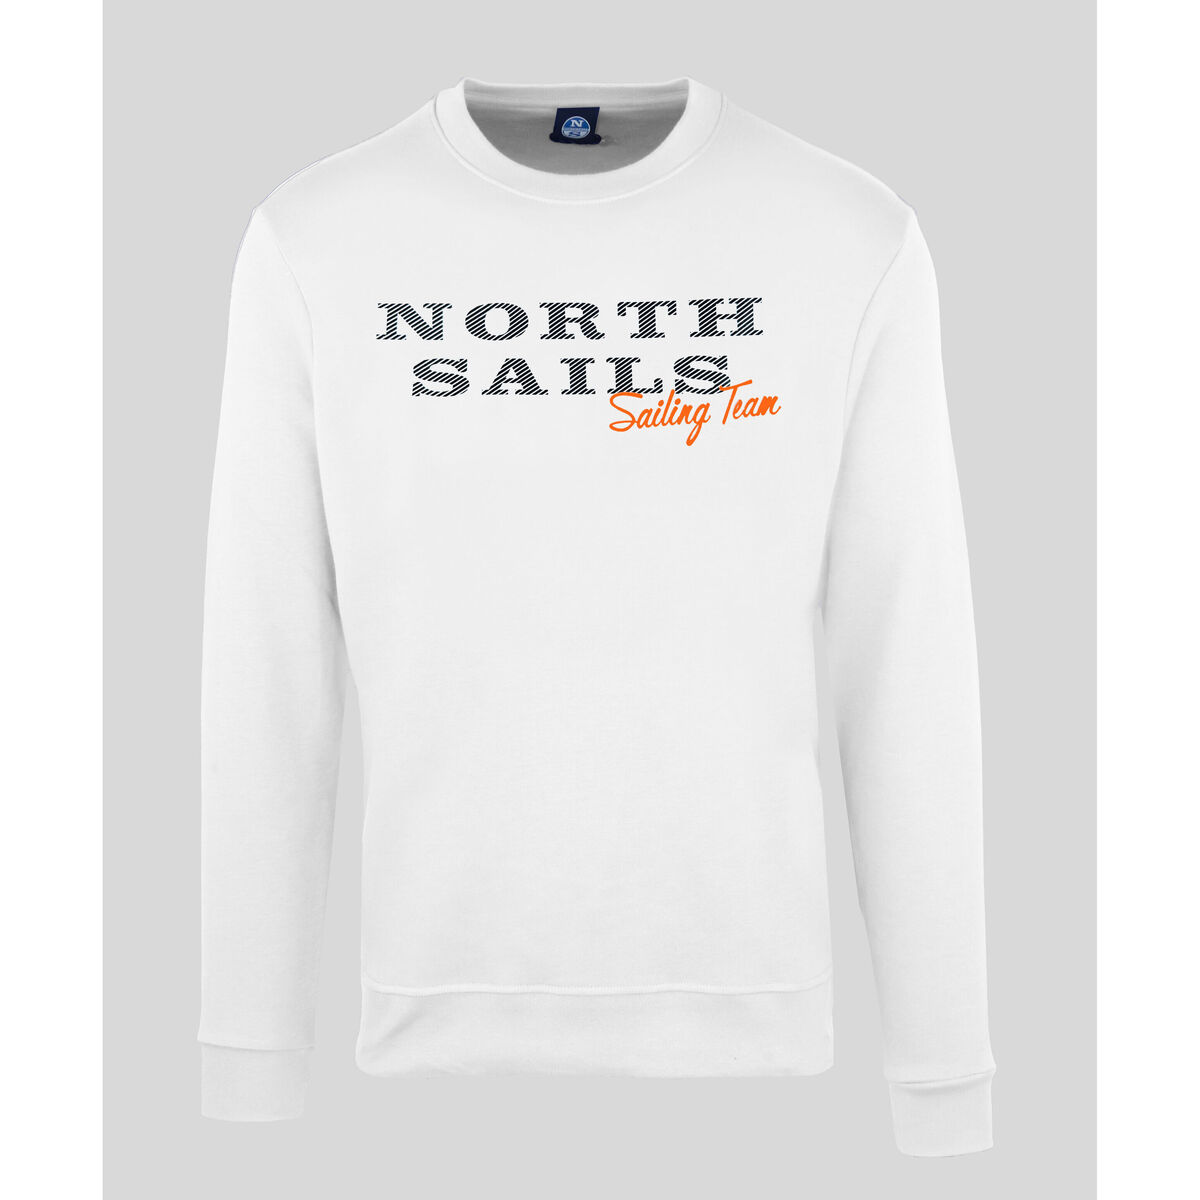 Vêtements Homme Sweats North Sails - 9022970 Blanc